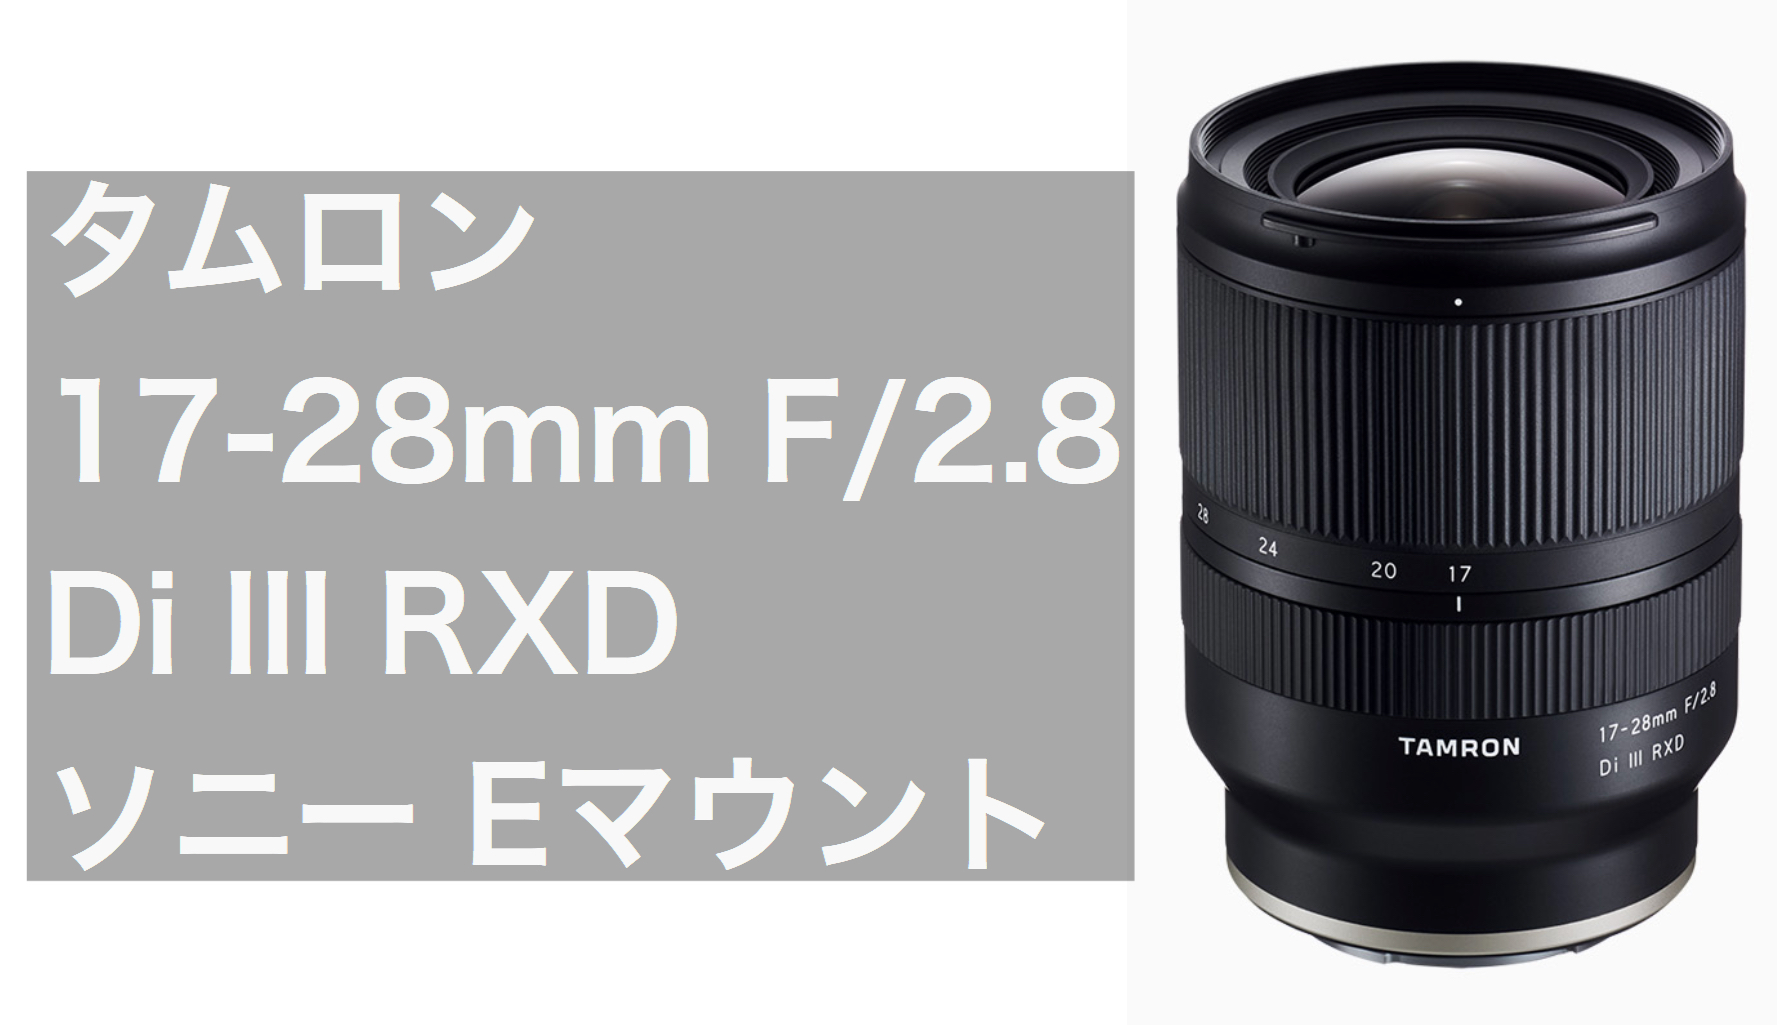 タムロン（TAMRON) 17-28mm F/2.8 Di III RXD 発表 |ソニー Eマウント 